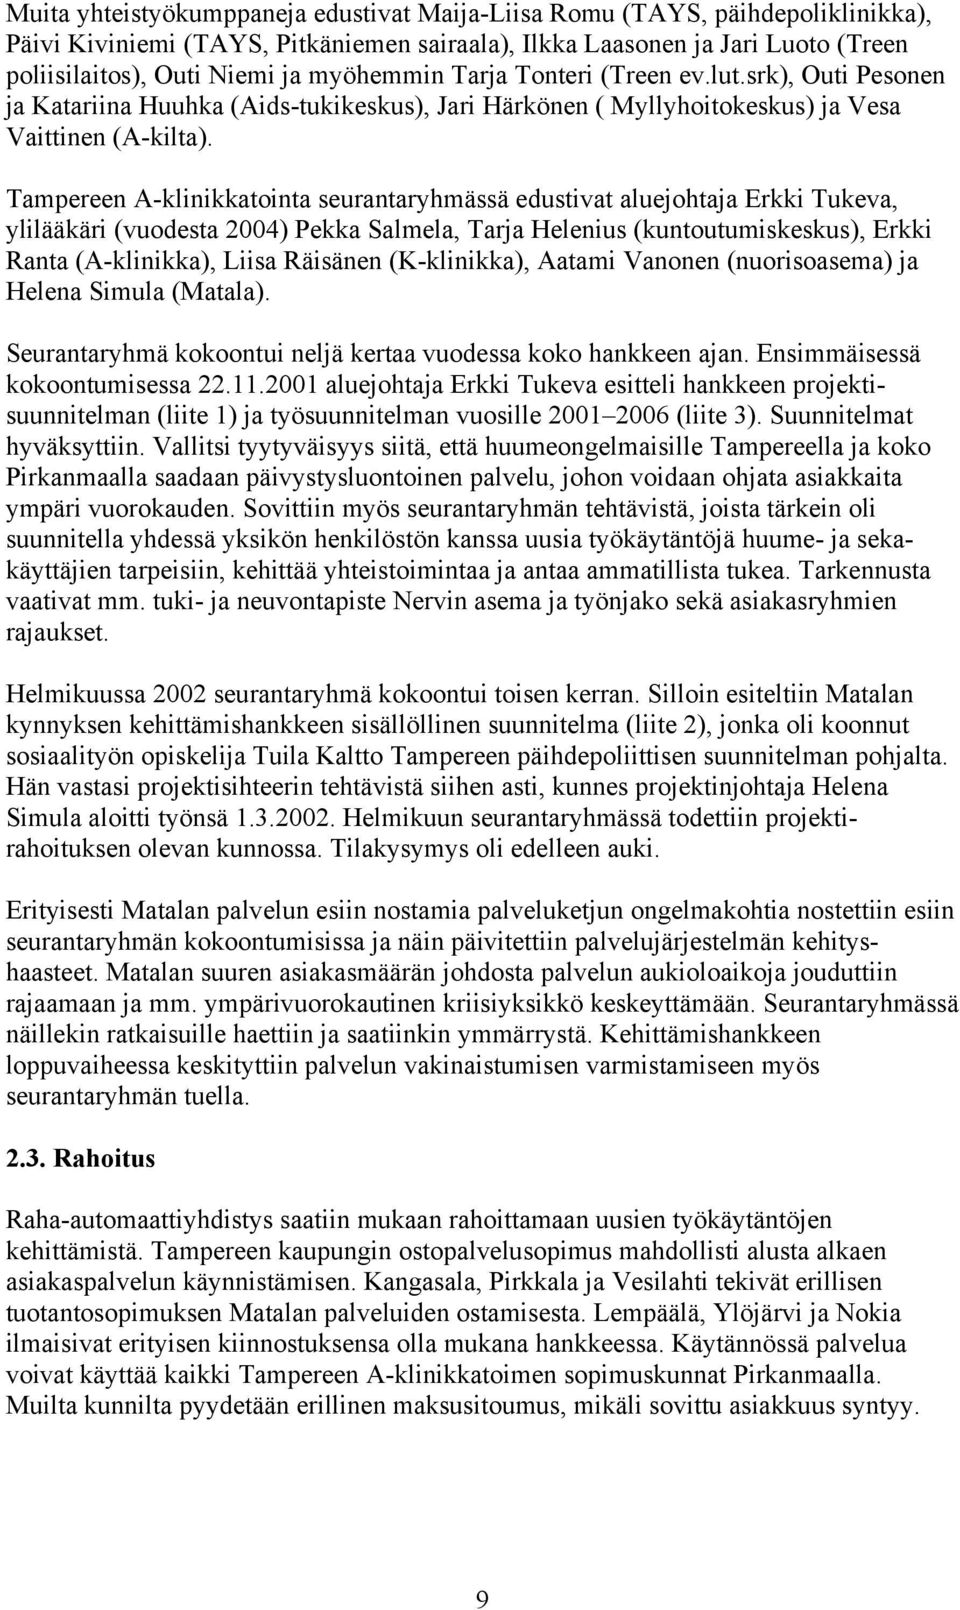 Tampereen A-klinikkatointa seurantaryhmässä edustivat aluejohtaja Erkki Tukeva, ylilääkäri (vuodesta 2004) Pekka Salmela, Tarja Helenius (kuntoutumiskeskus), Erkki Ranta (A-klinikka), Liisa Räisänen